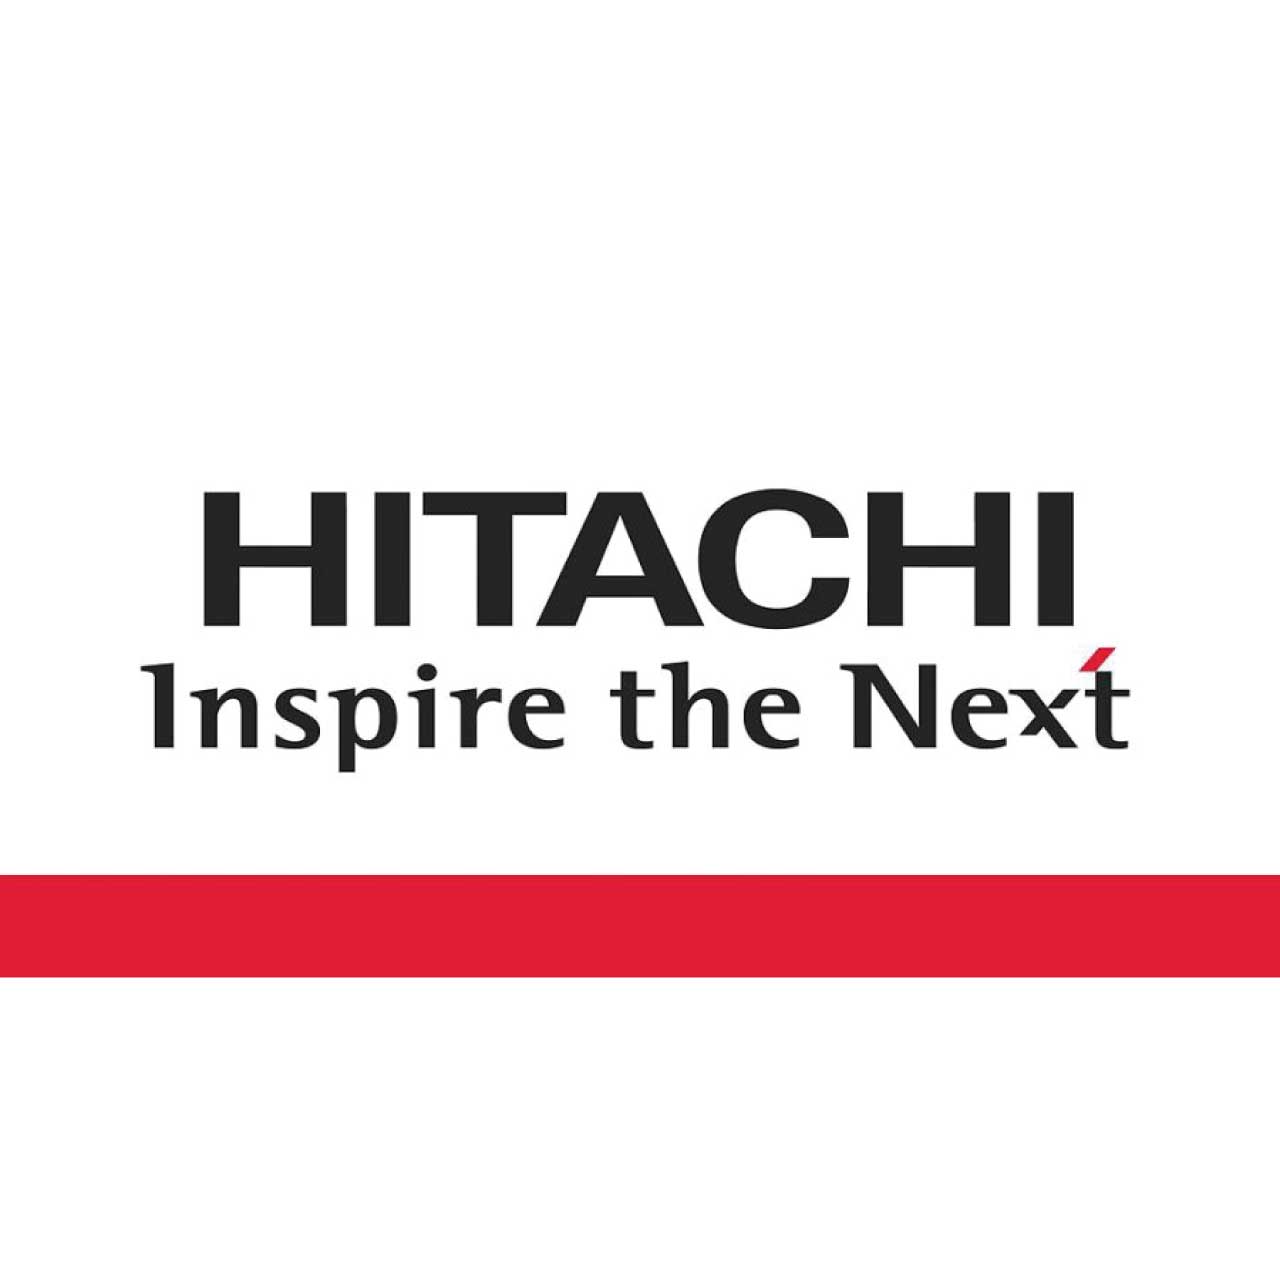  HITACHI